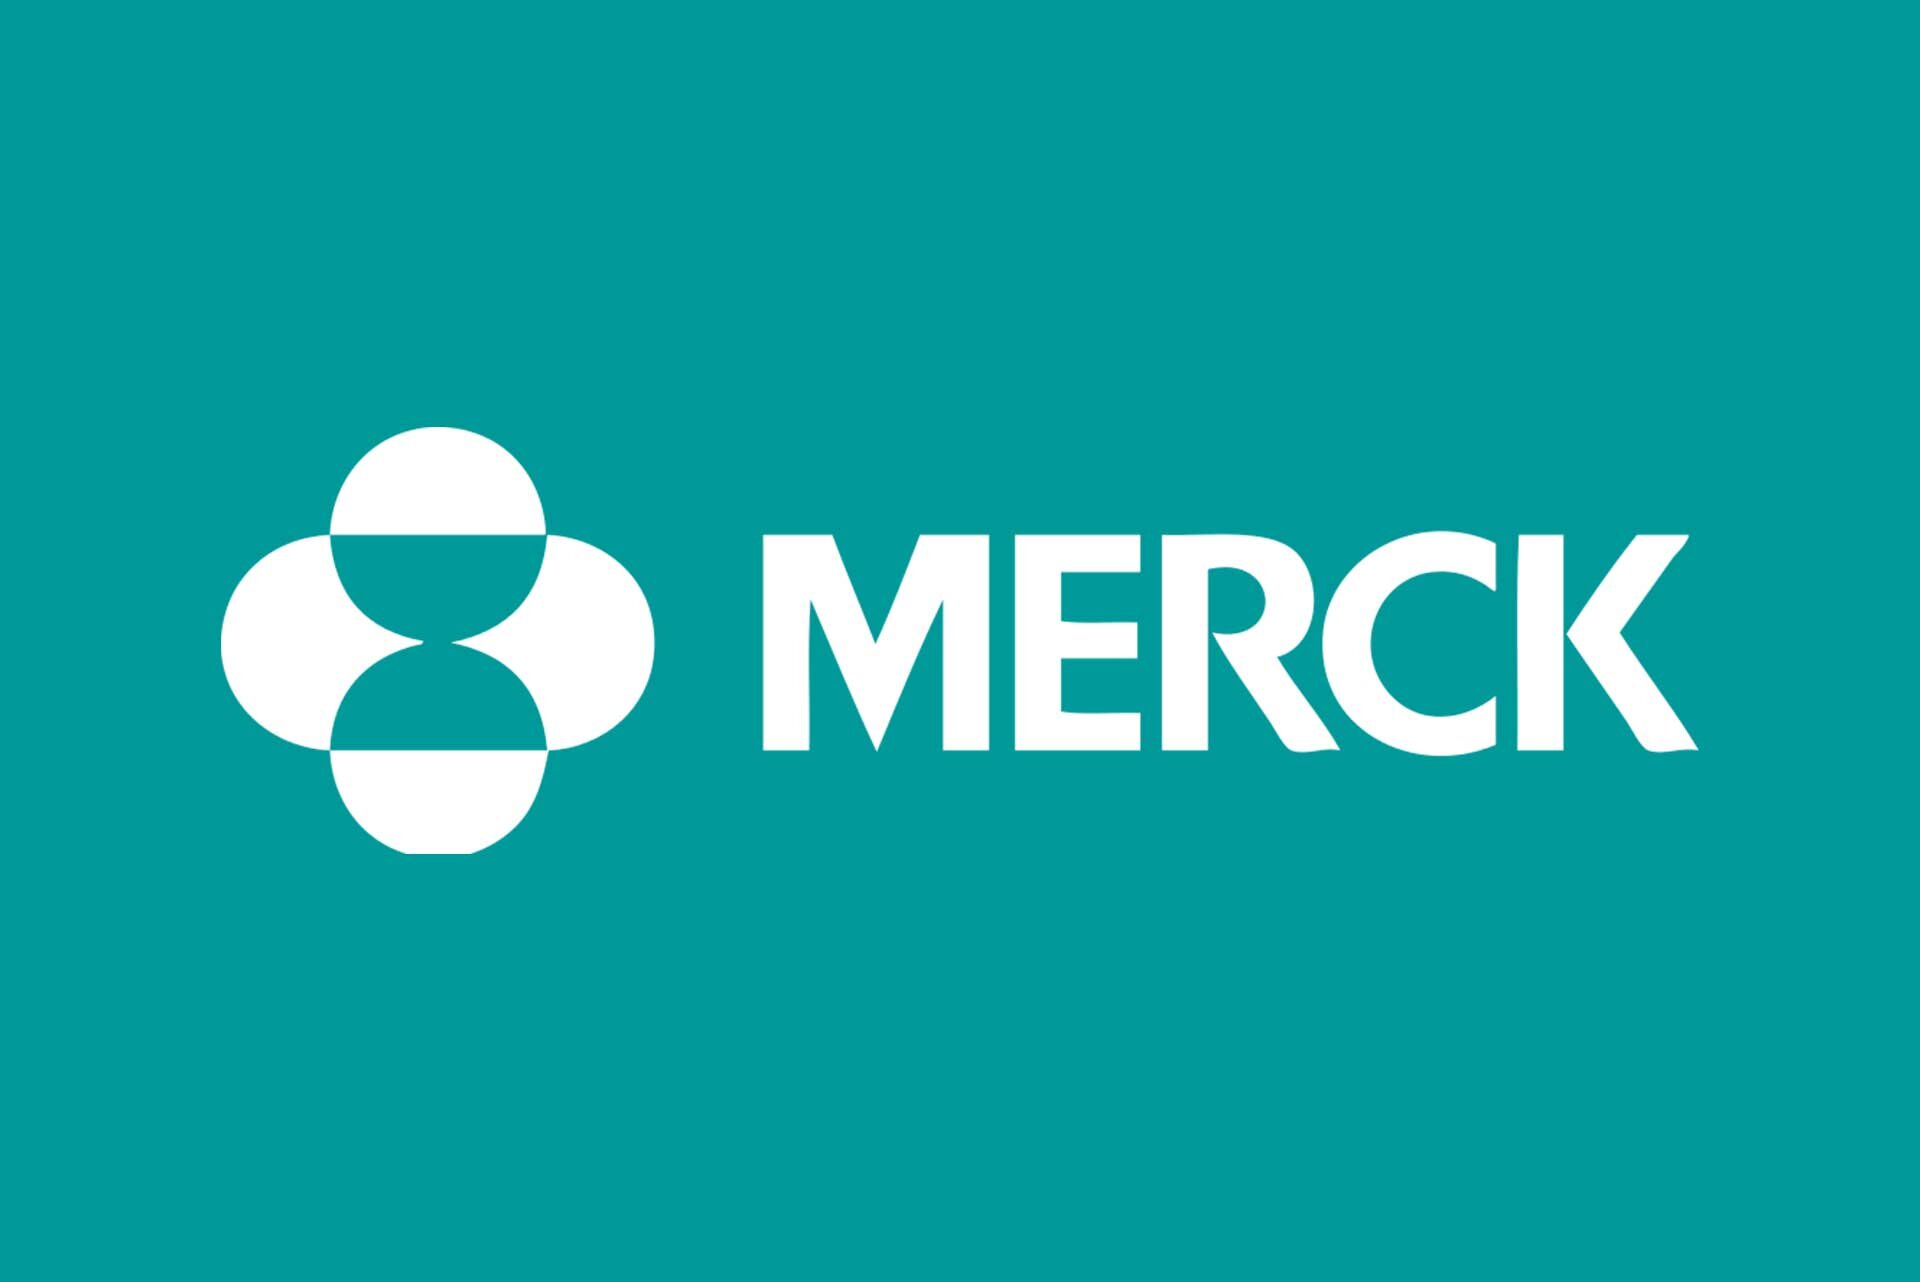 merck-logo-panel.jpg